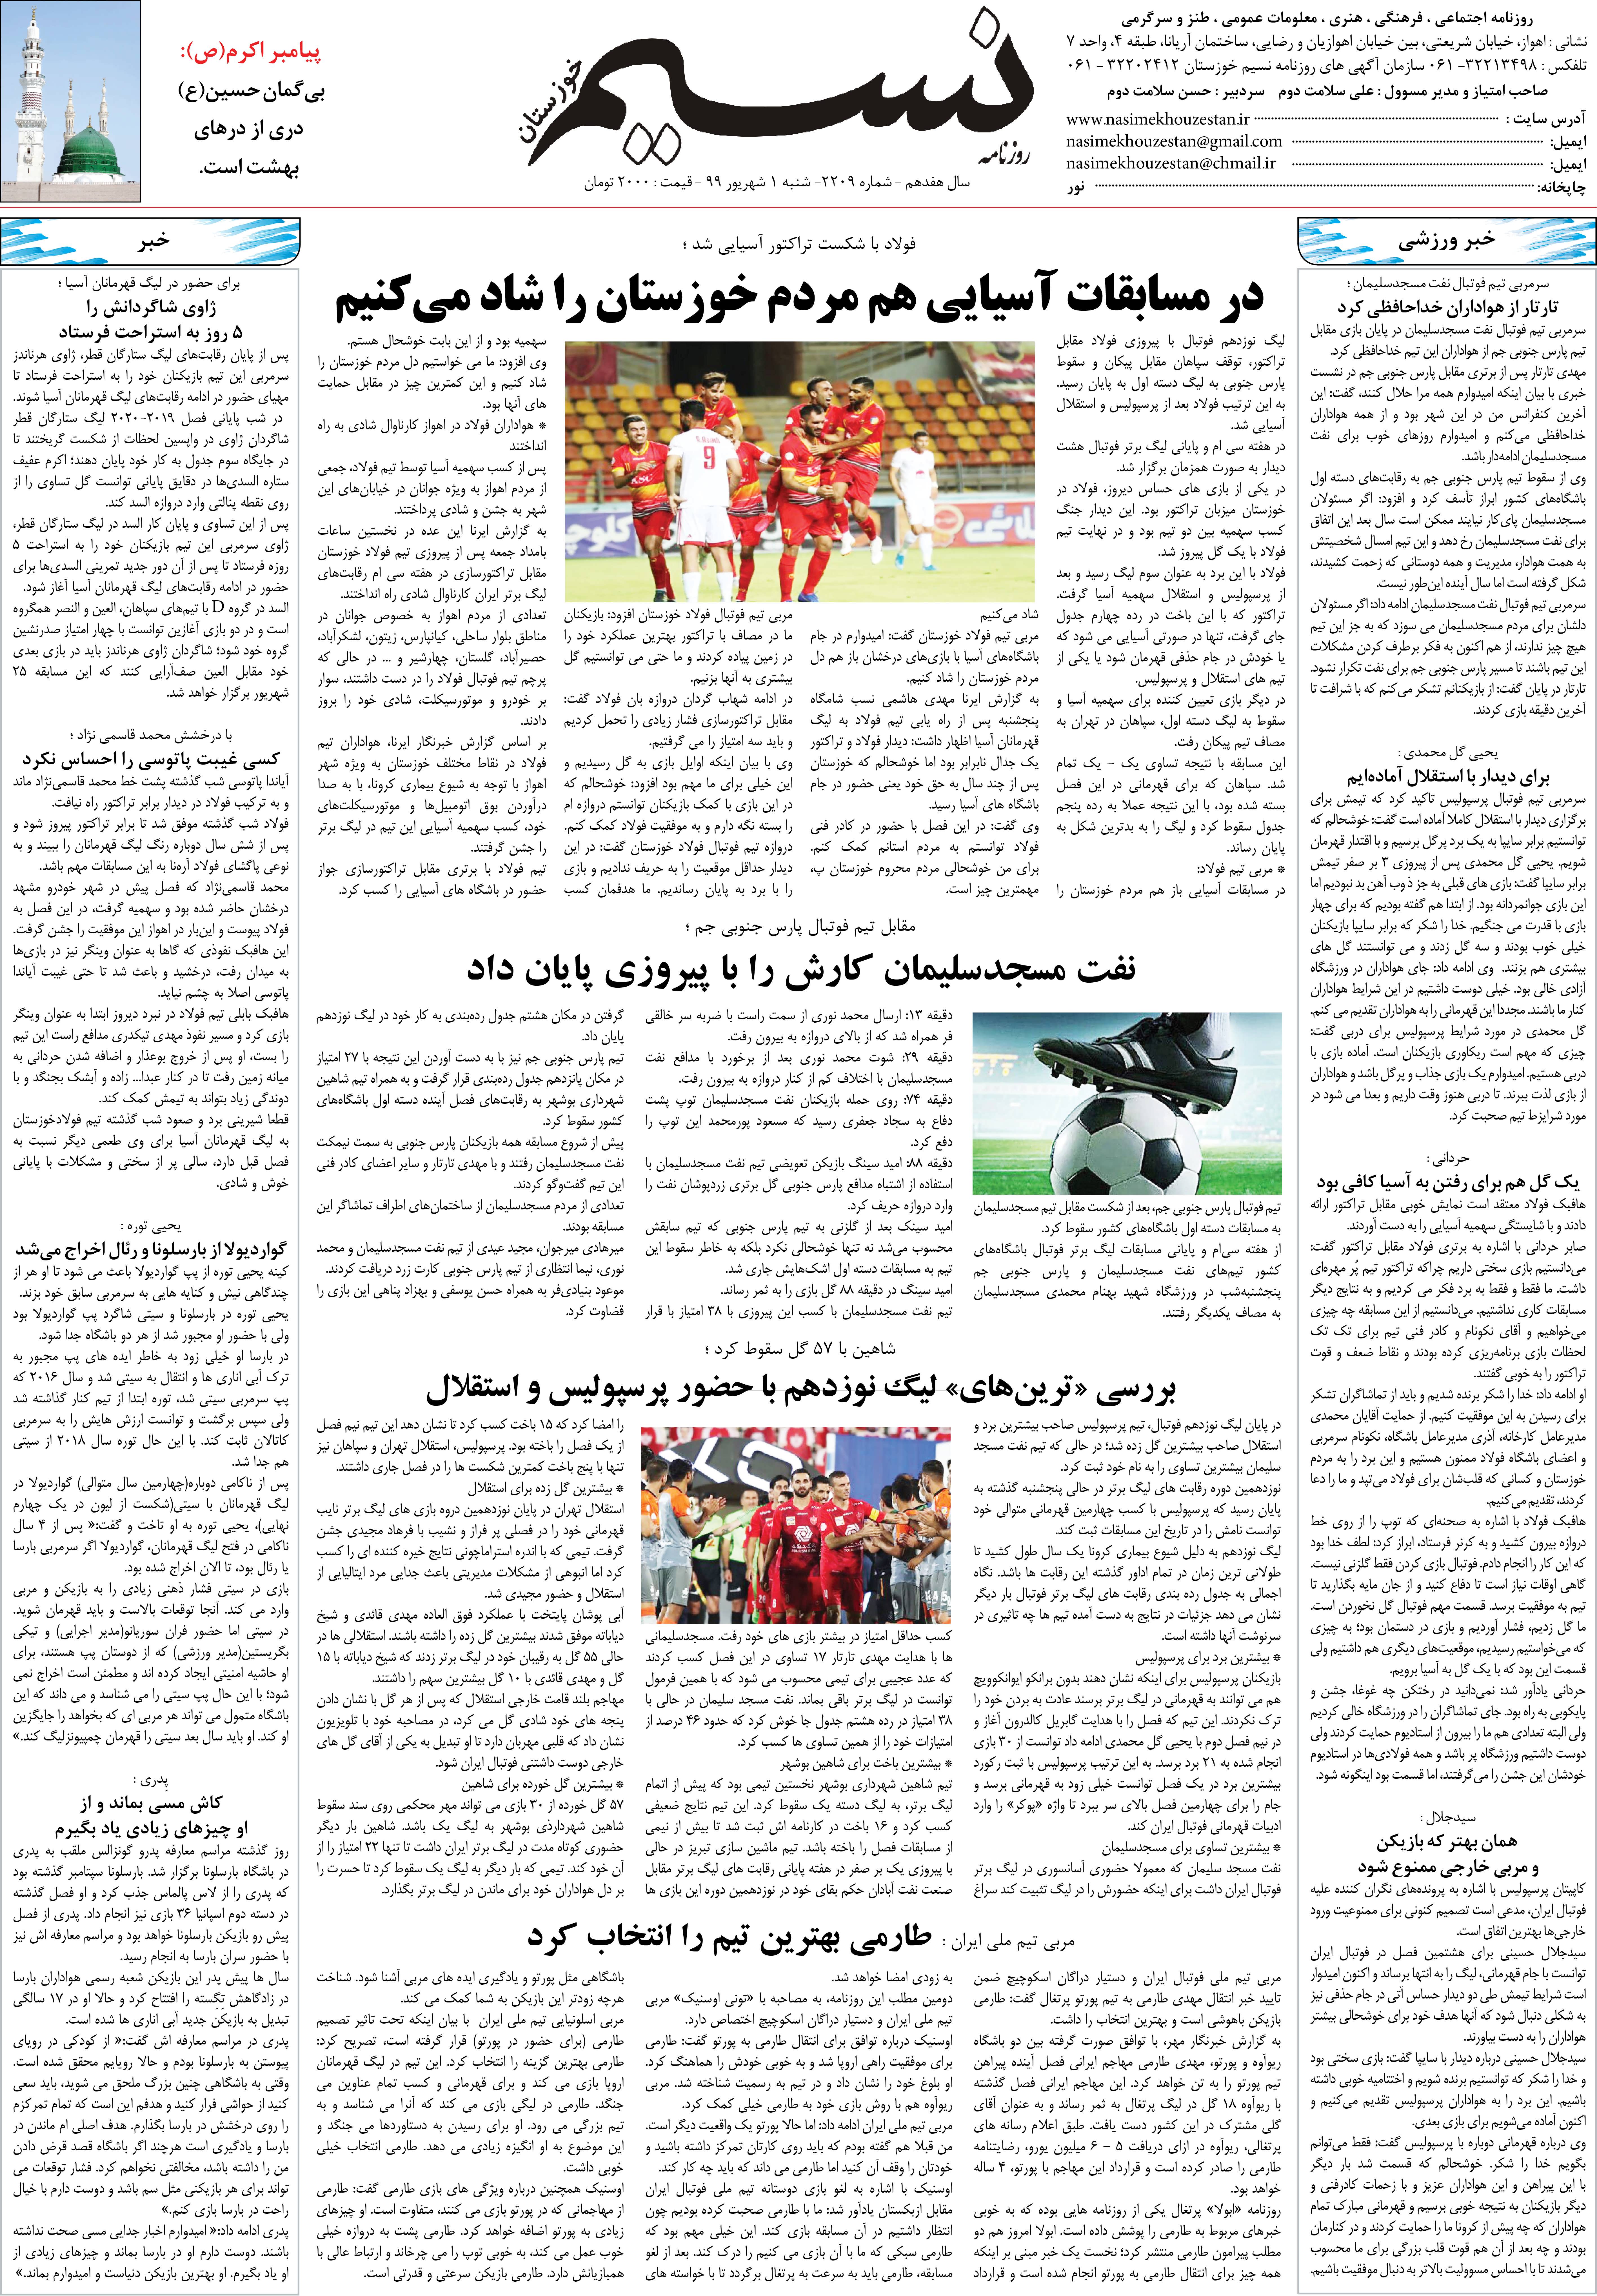 صفحه آخر روزنامه نسیم شماره 2209